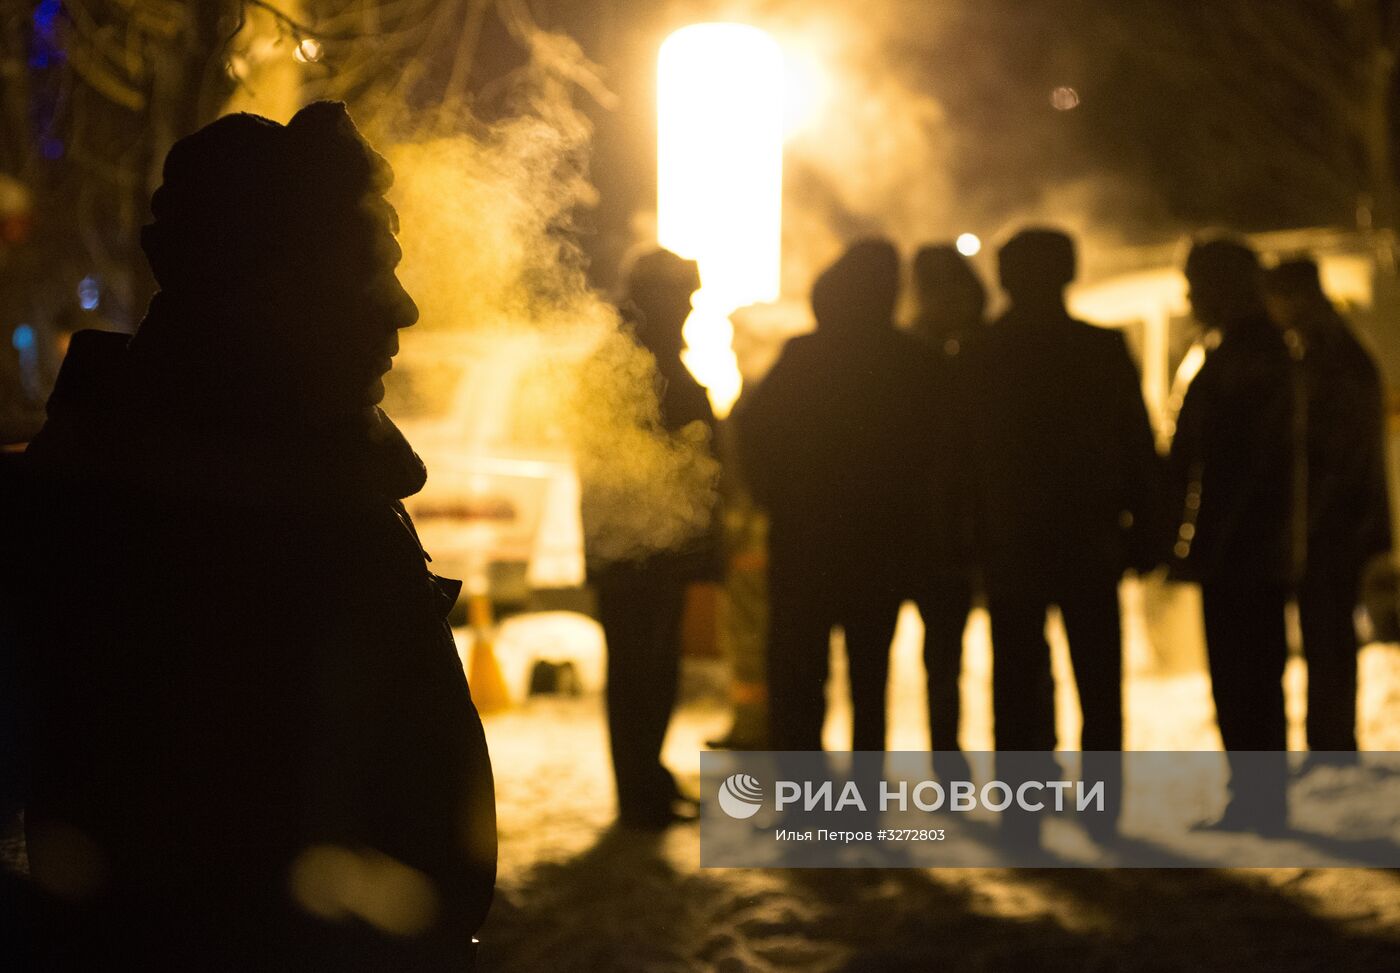 Взрыв бытового газа в жилом доме в Омске